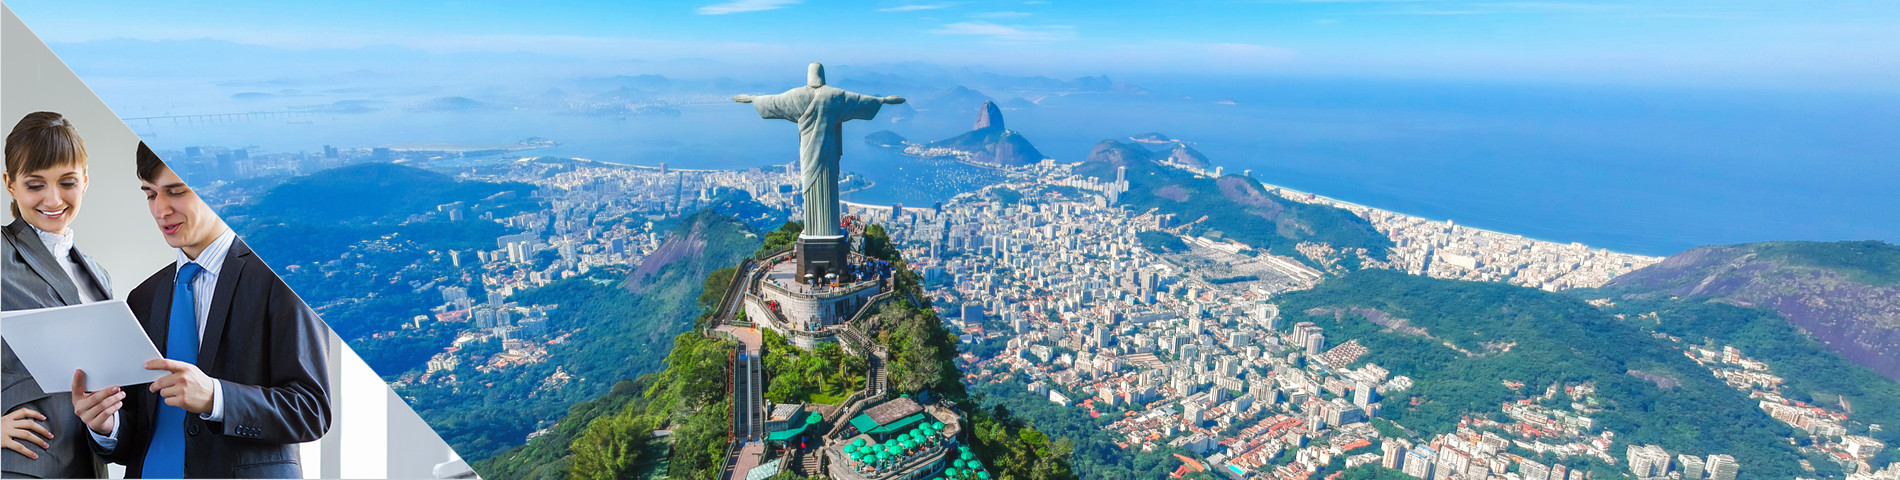 ประเทศบราซิล - หลักสูตรธุรกิจแบบตัวต่อตัว